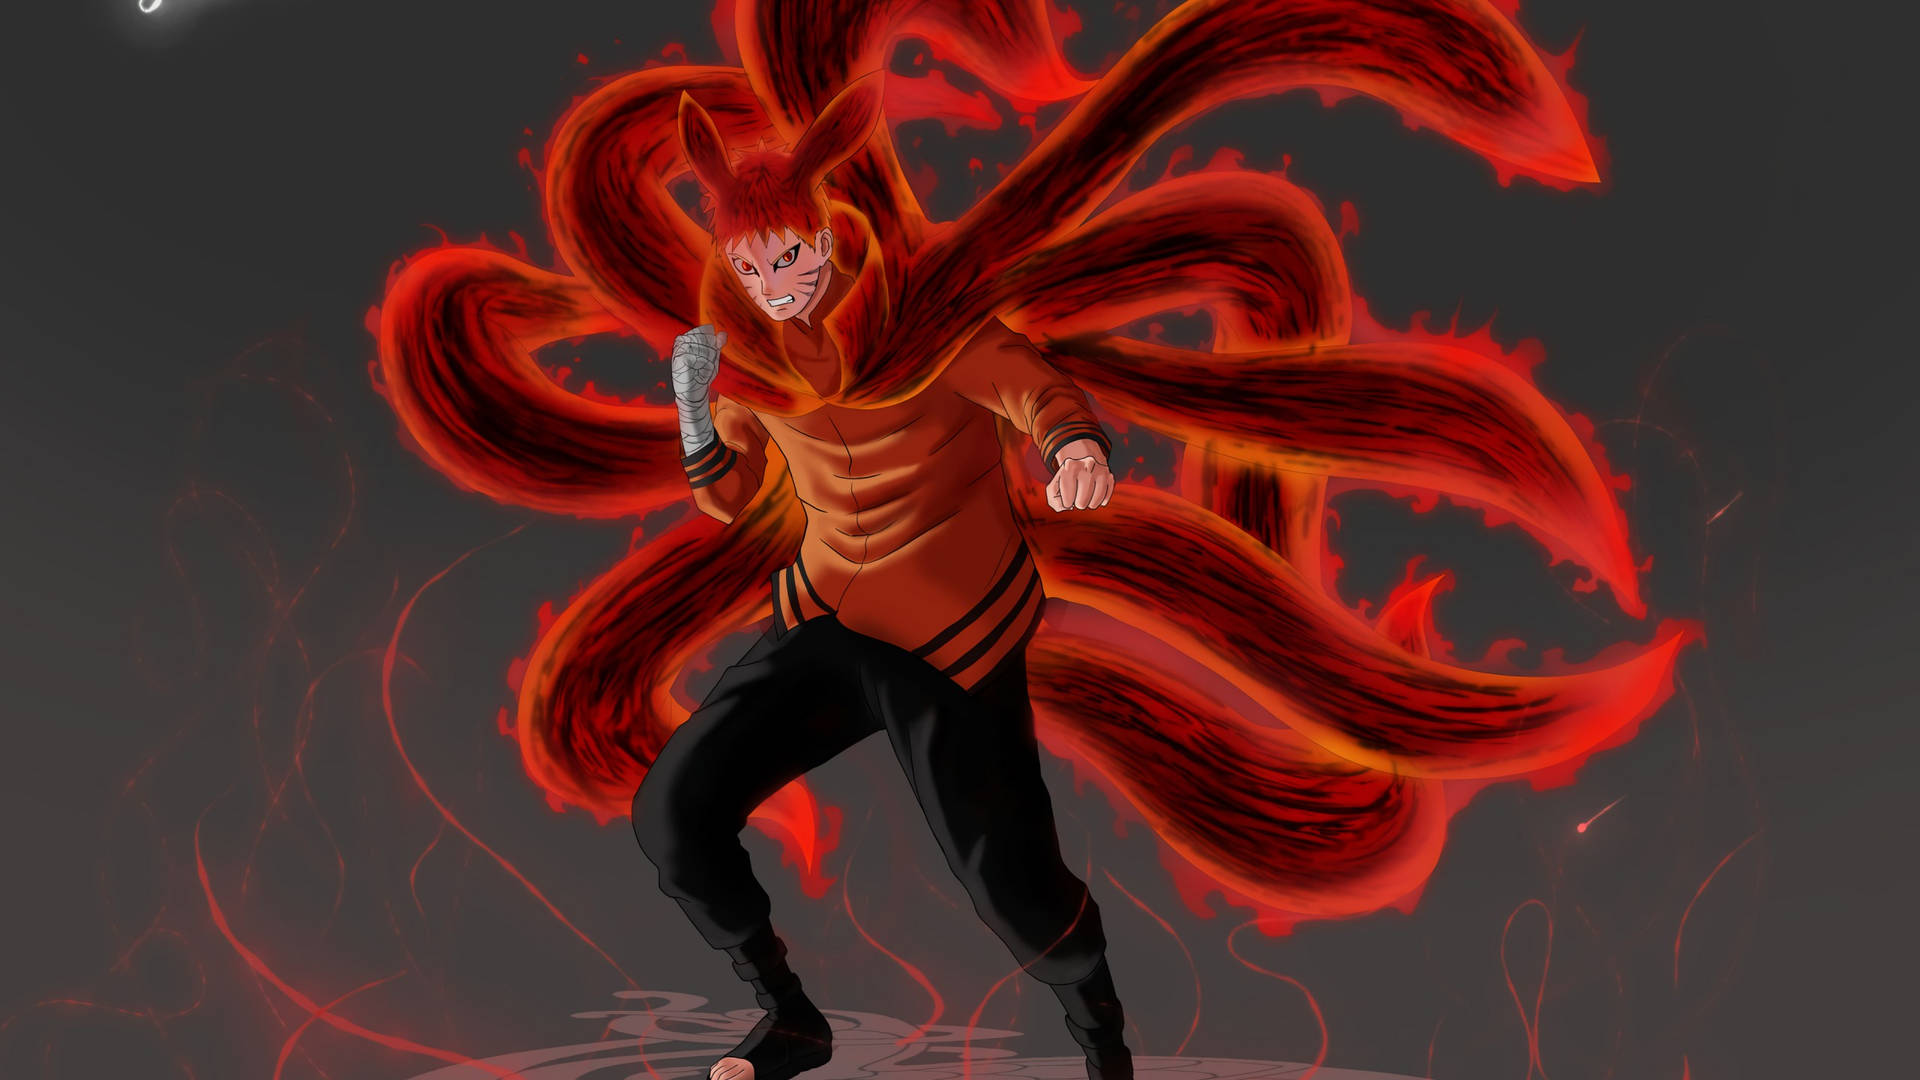 Se transformationen af Naruto til hans ultimative Endelige Form. Wallpaper